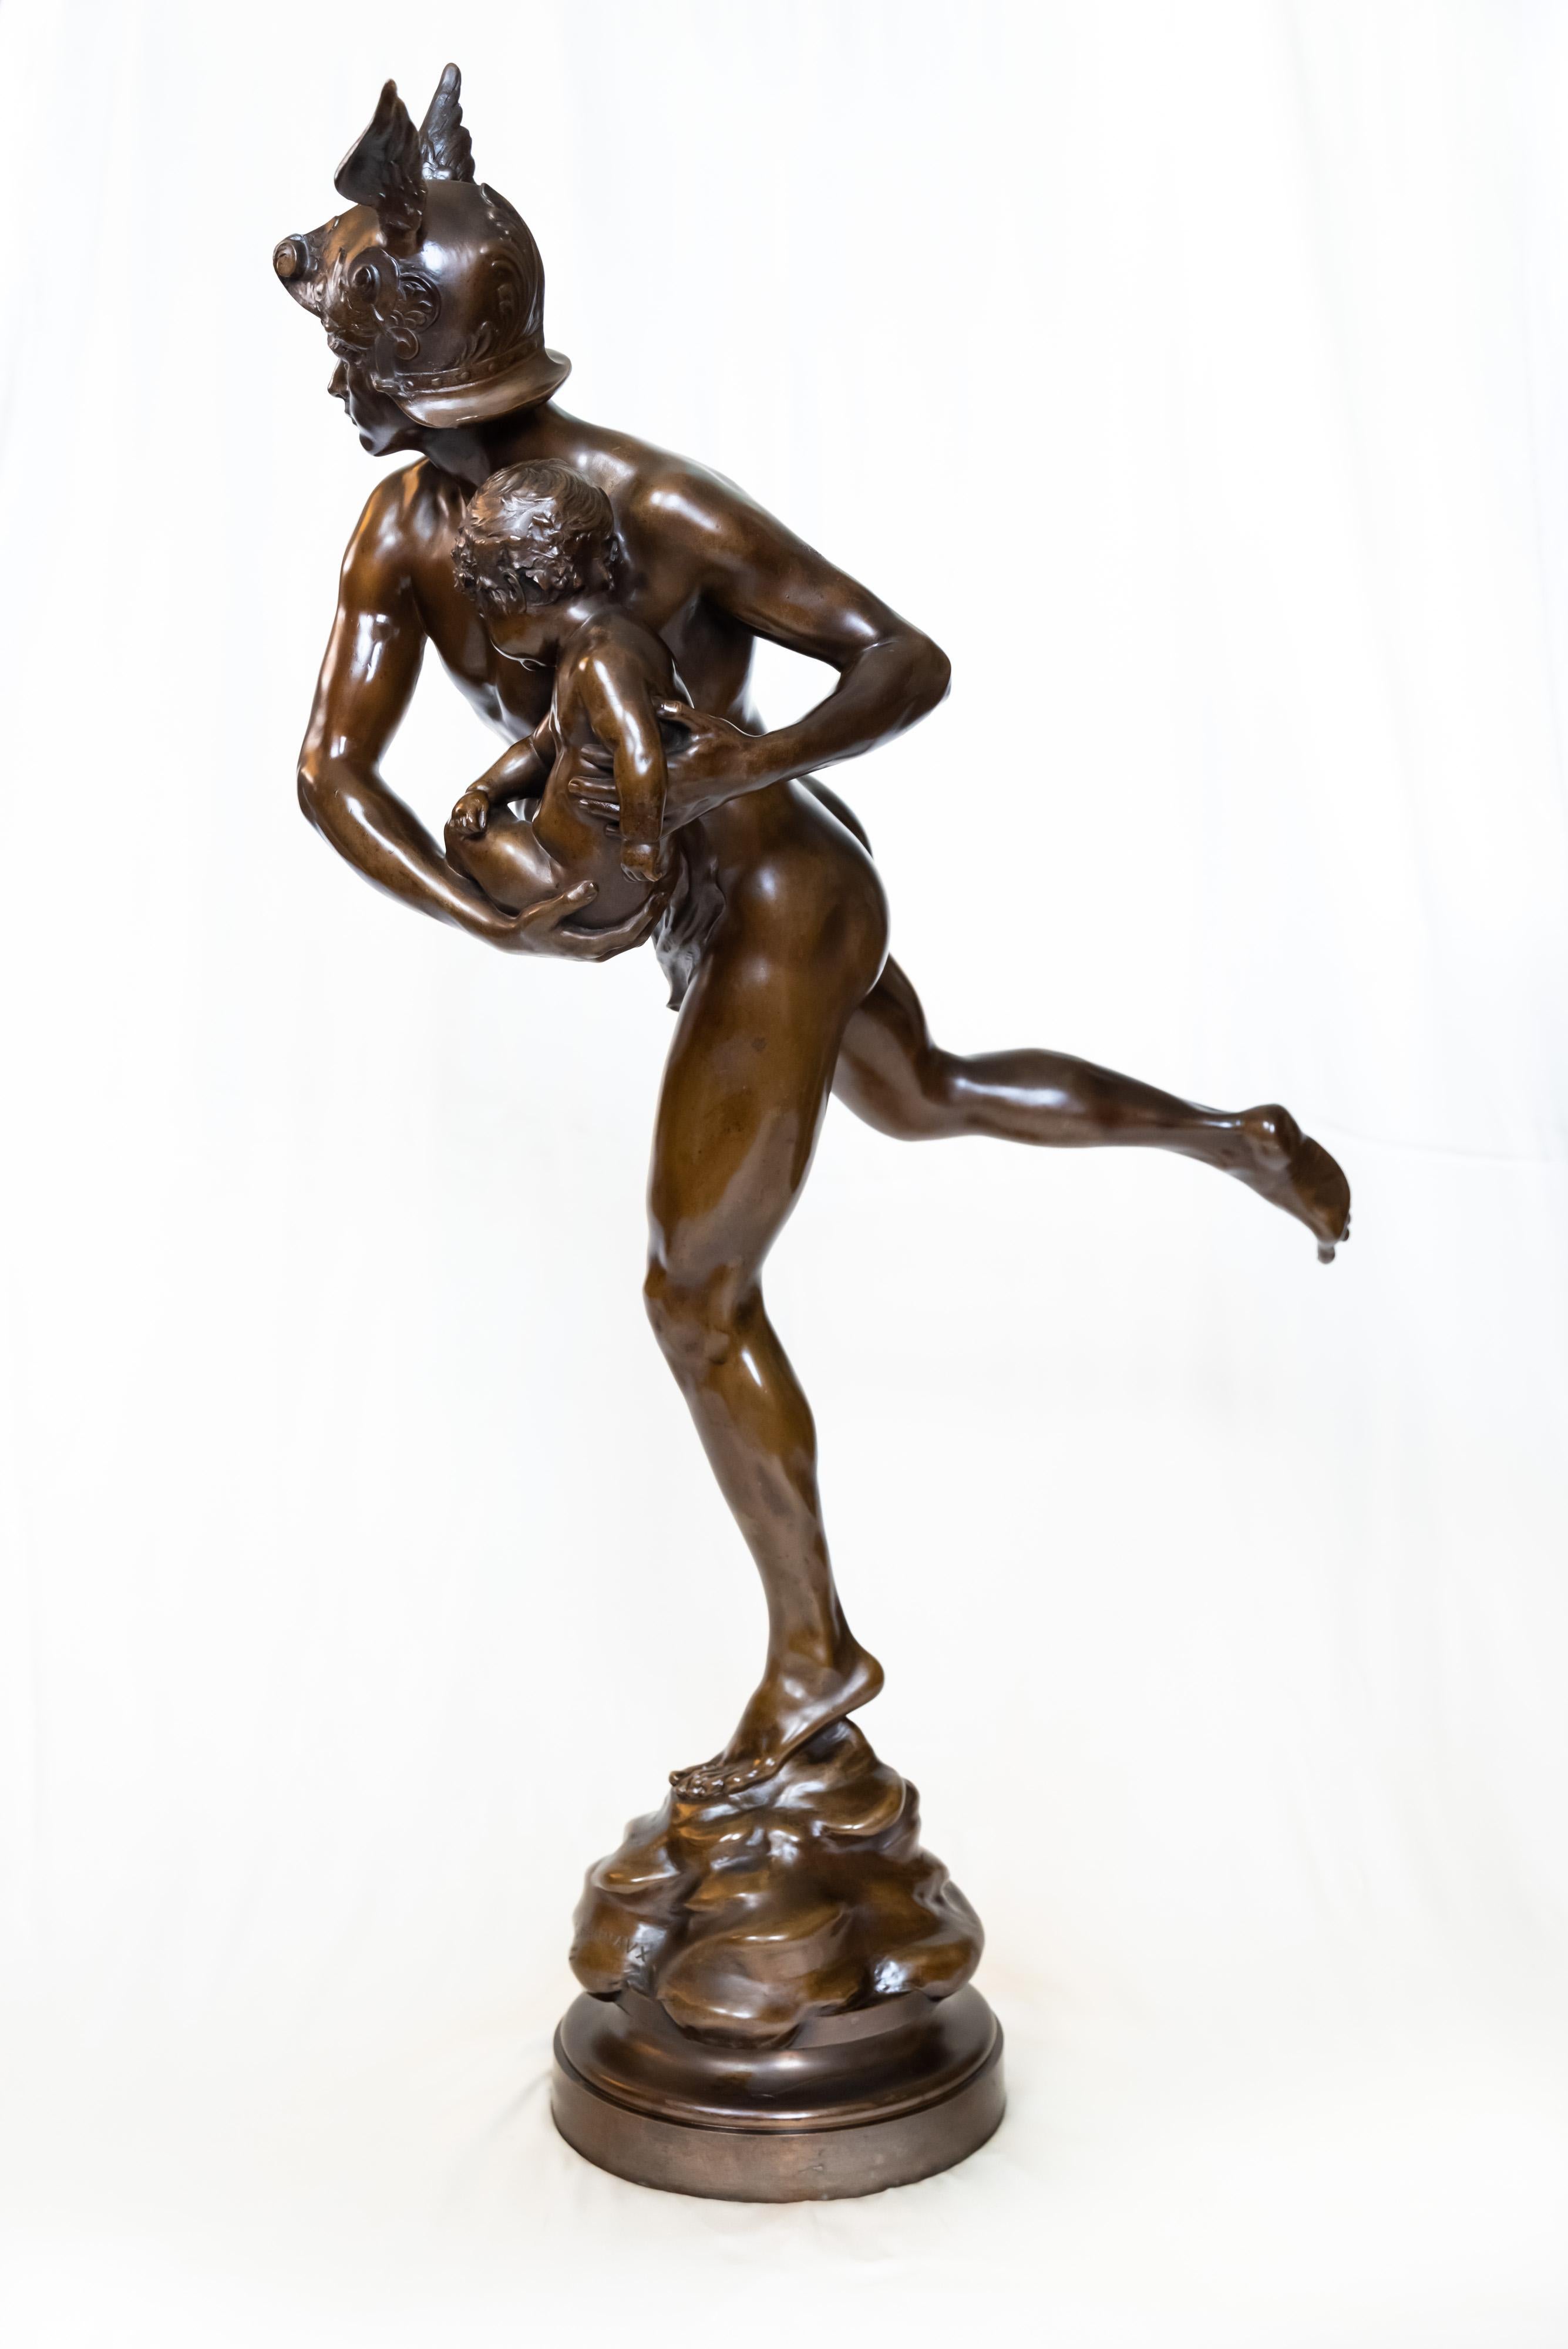 Mercure portant Cupidon - Merkur, der Amor befreit - von dem französischen Bildhauer Emmanuel Hannaux. Die Figur aus schokoladenpatinierter Bronze, die auf einem runden, drehbaren Sockel ruht, strahlt sowohl geschmeidige Eleganz als auch feurige